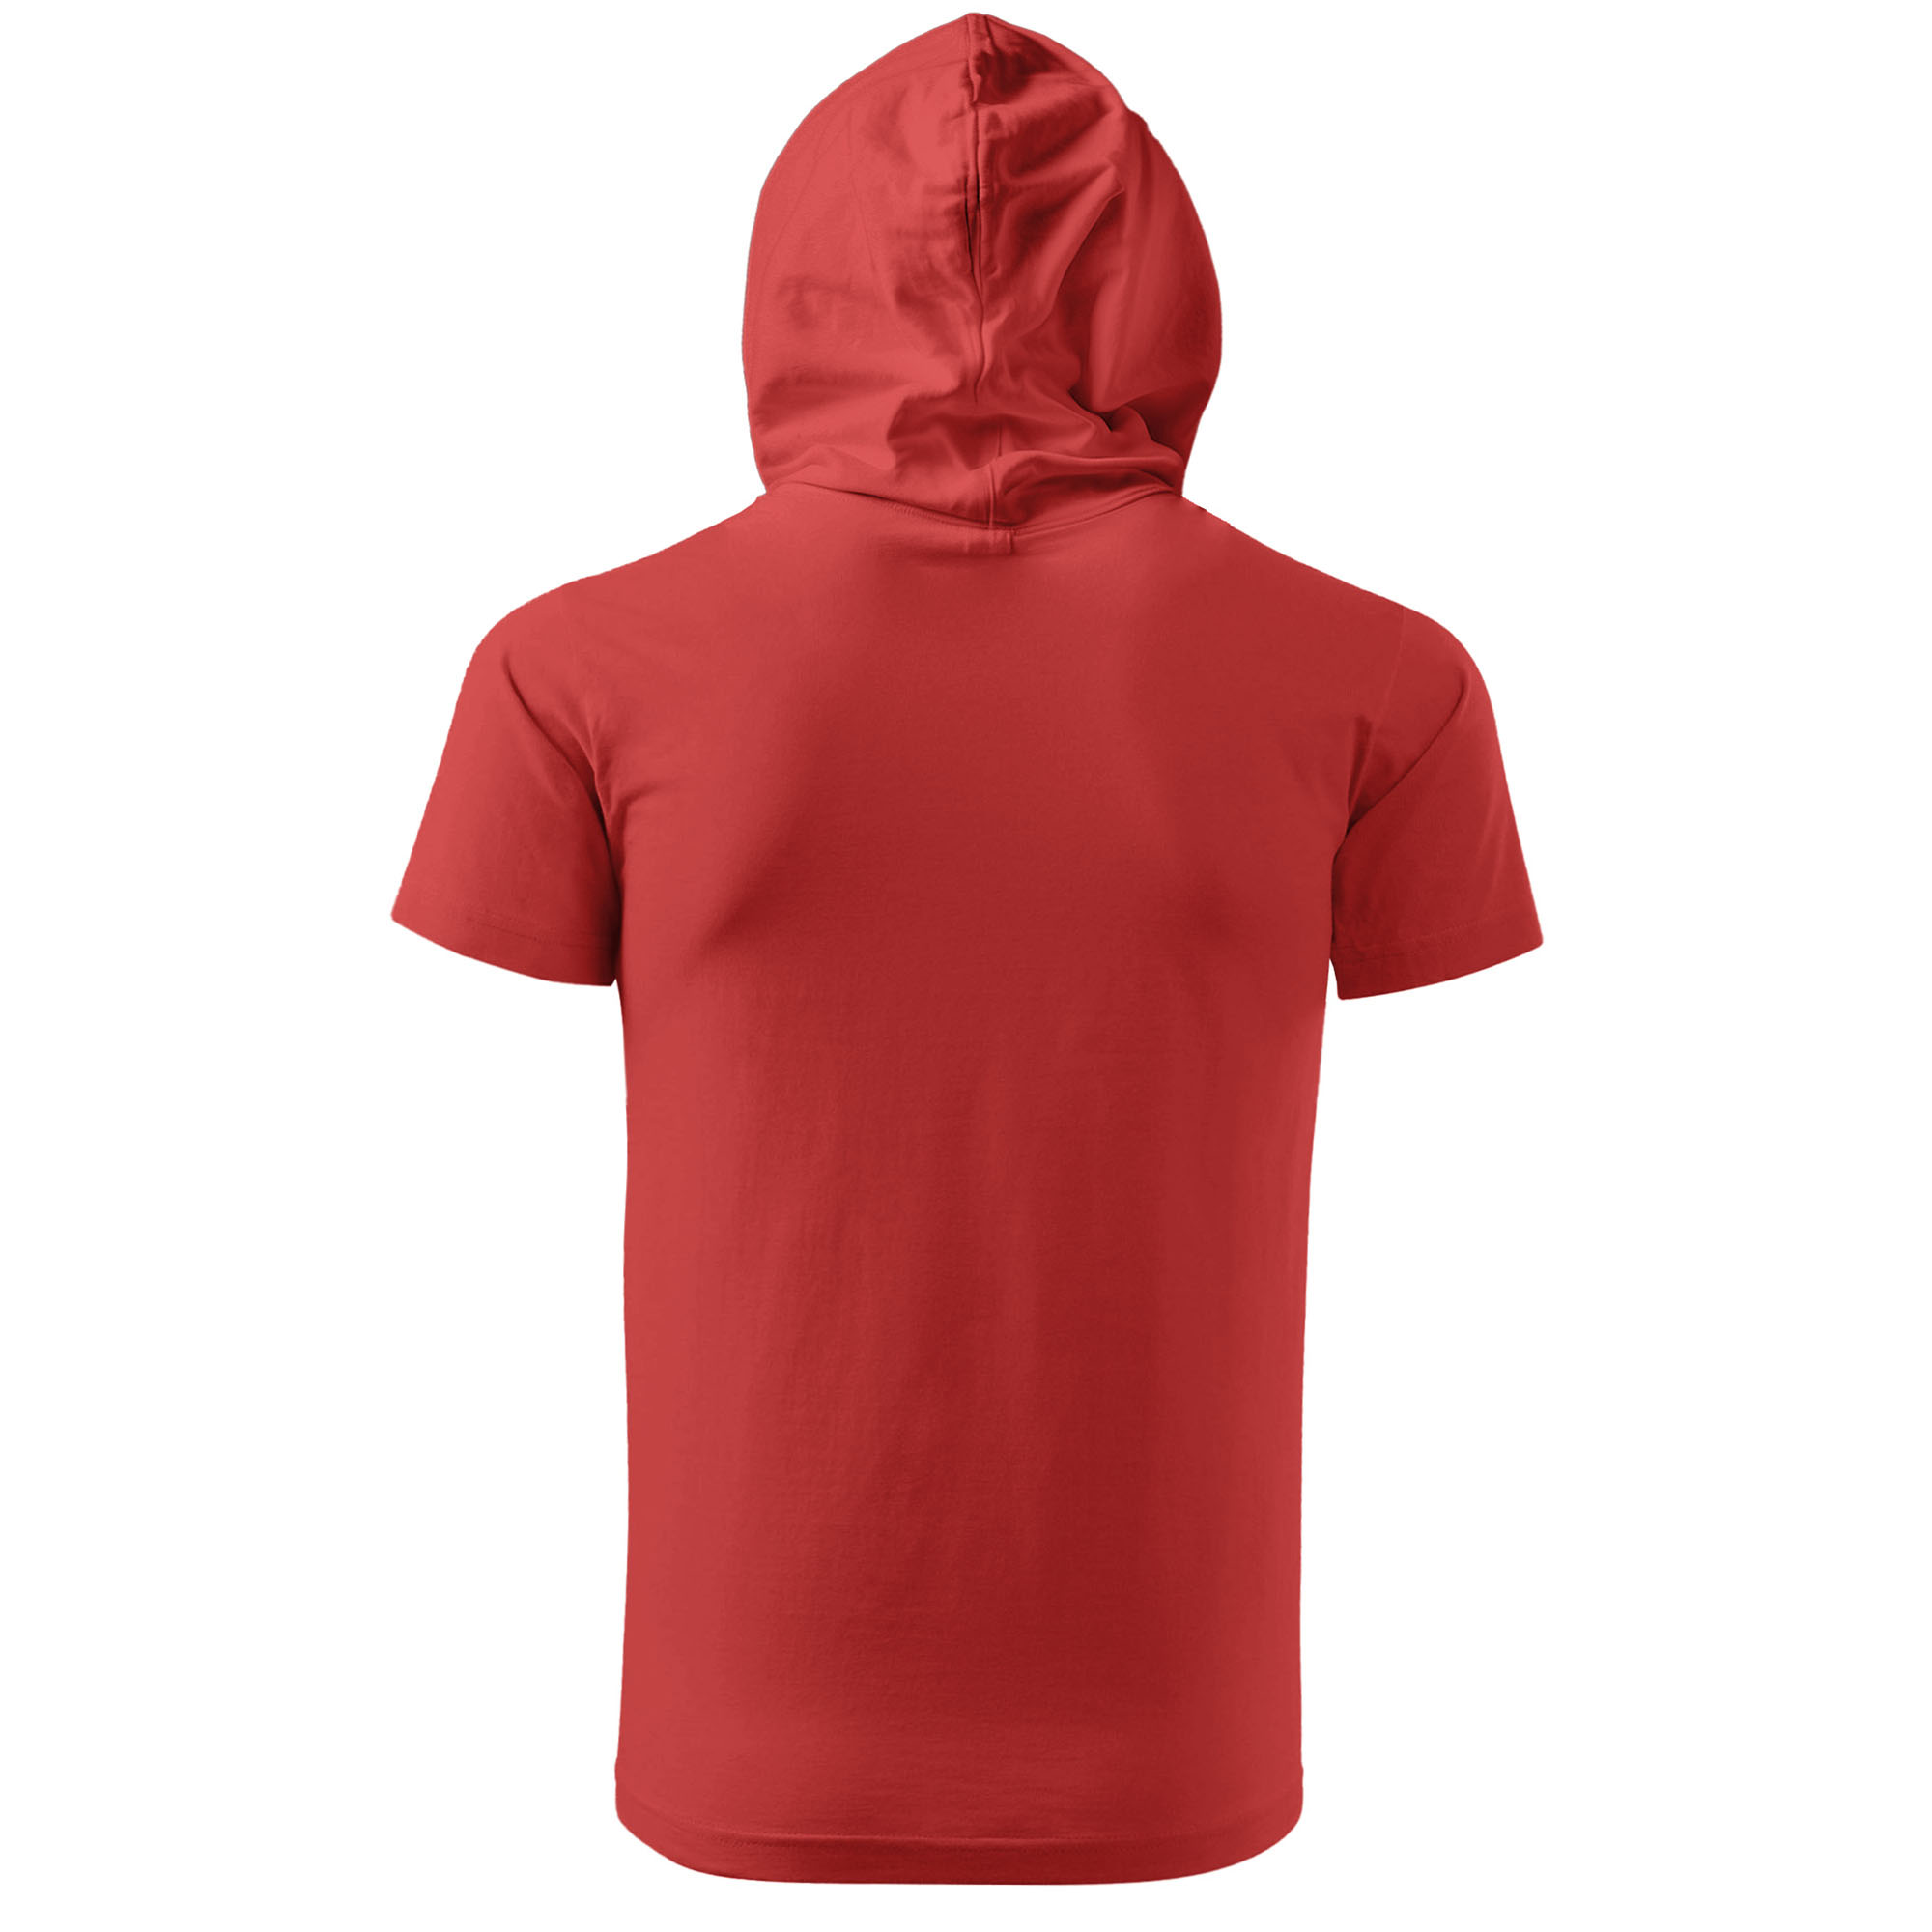 تی شرت کلاه دار مردانه مدل 14030204a رنگ قرمز